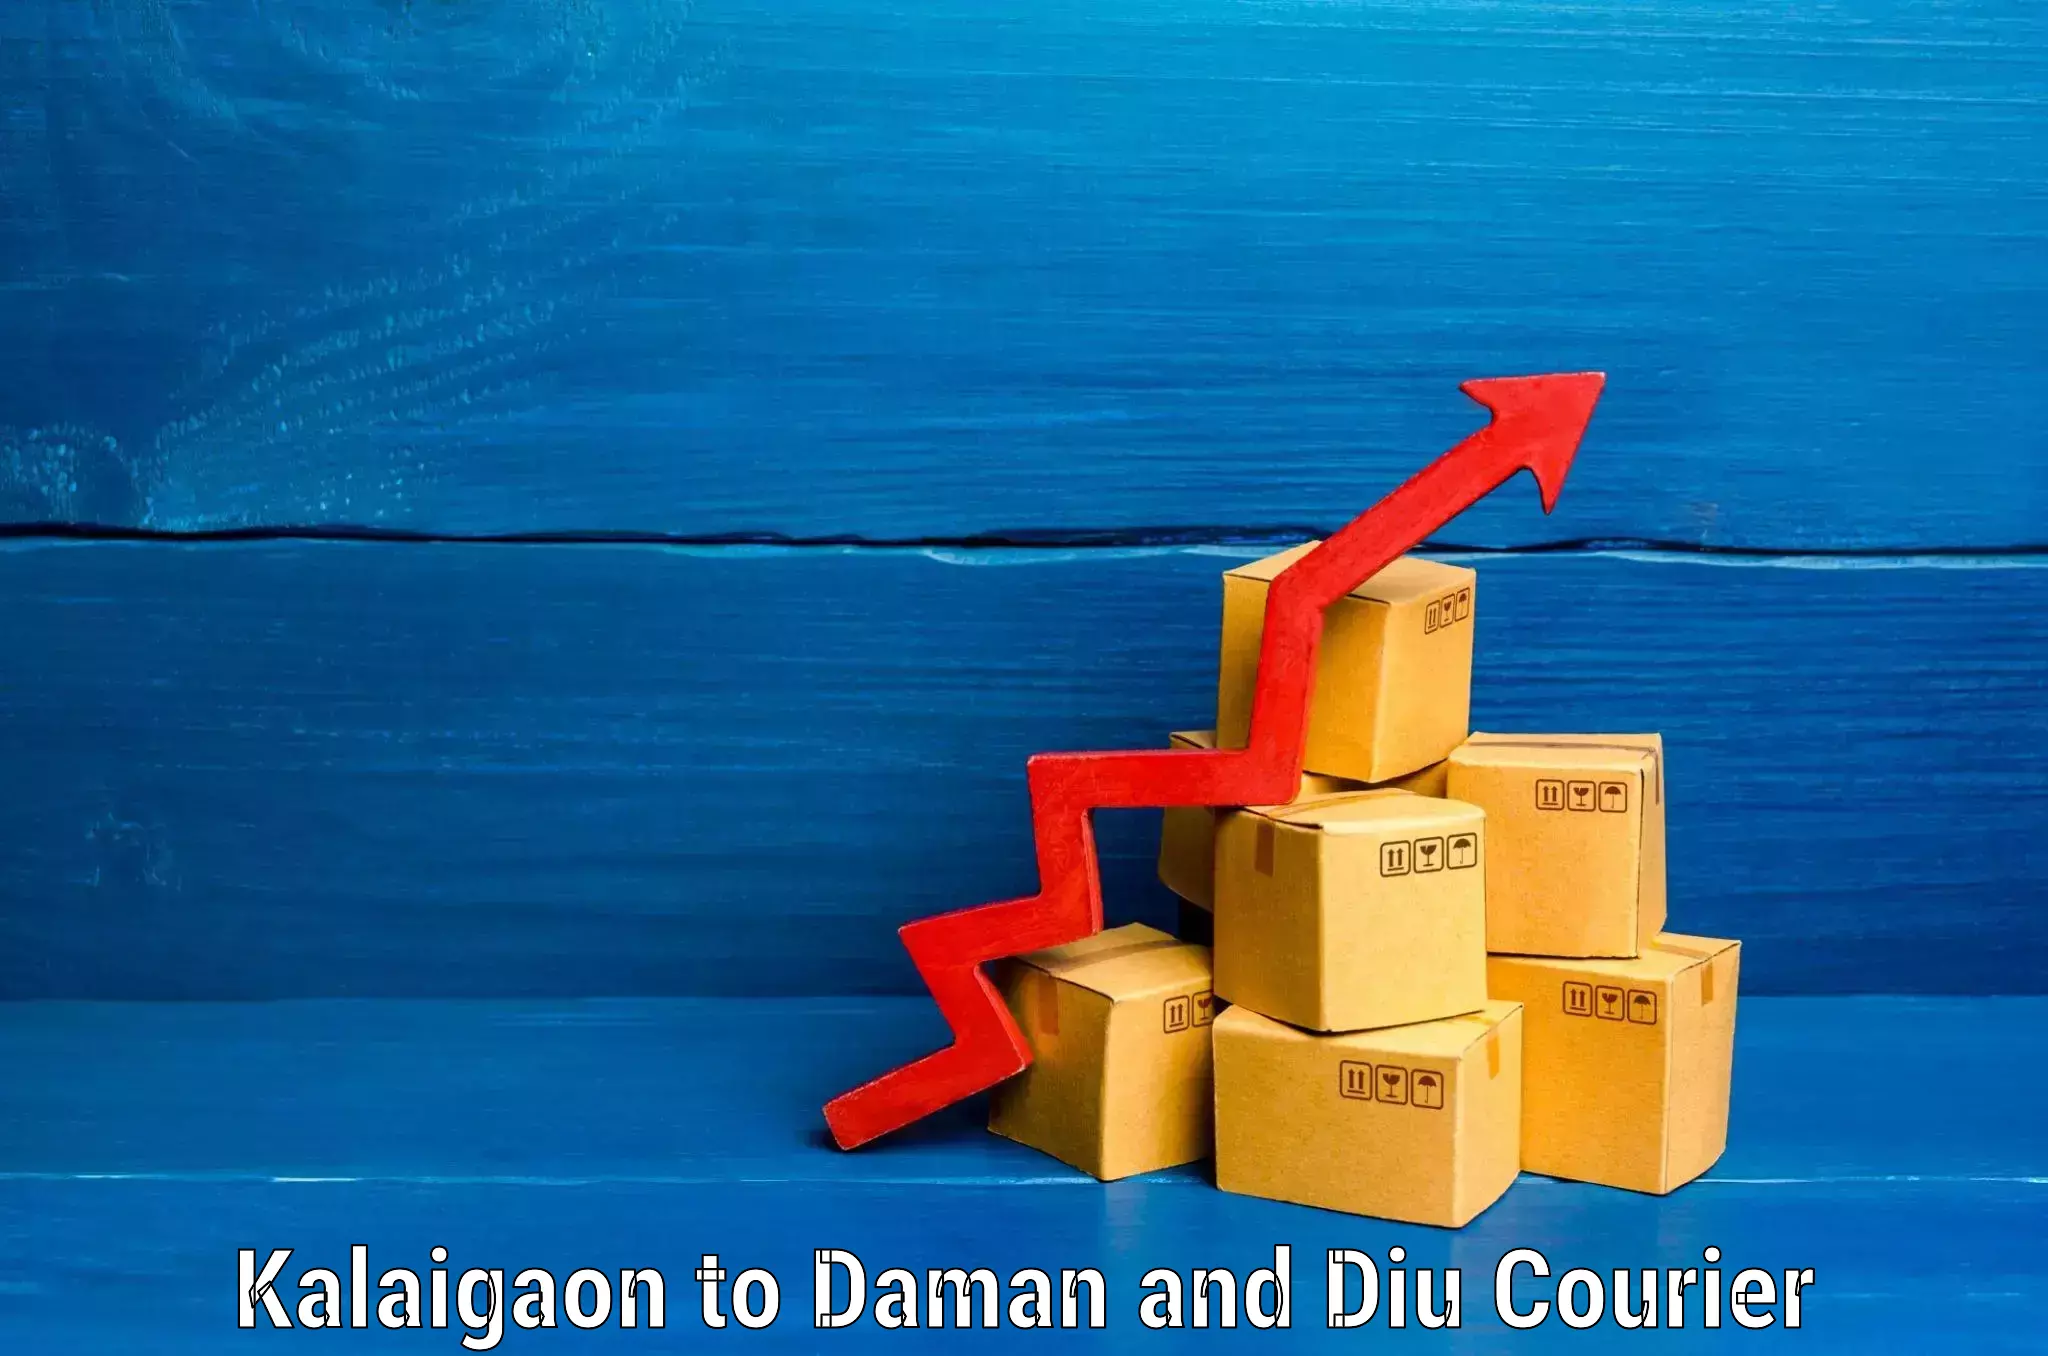 Express luggage delivery Kalaigaon to Daman and Diu